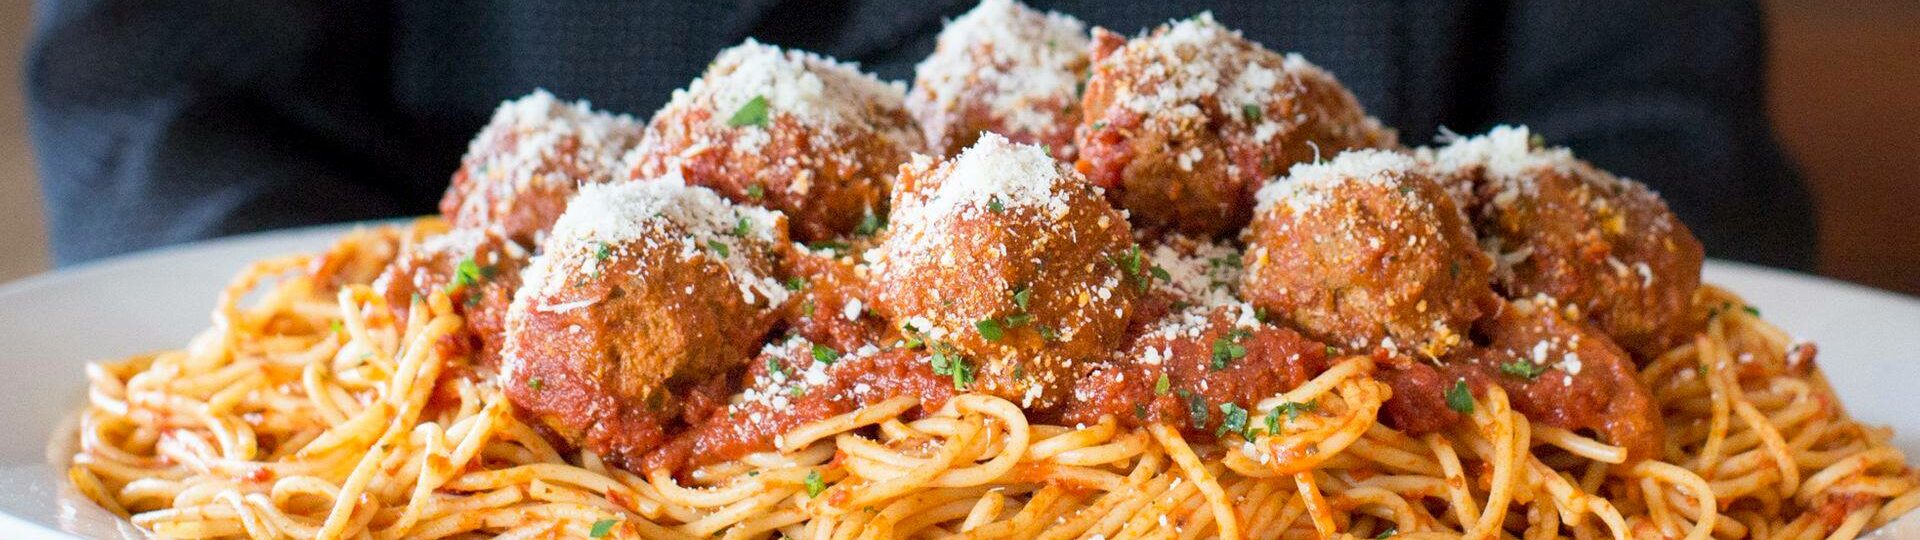 tomatina spaghetti and meatballs.